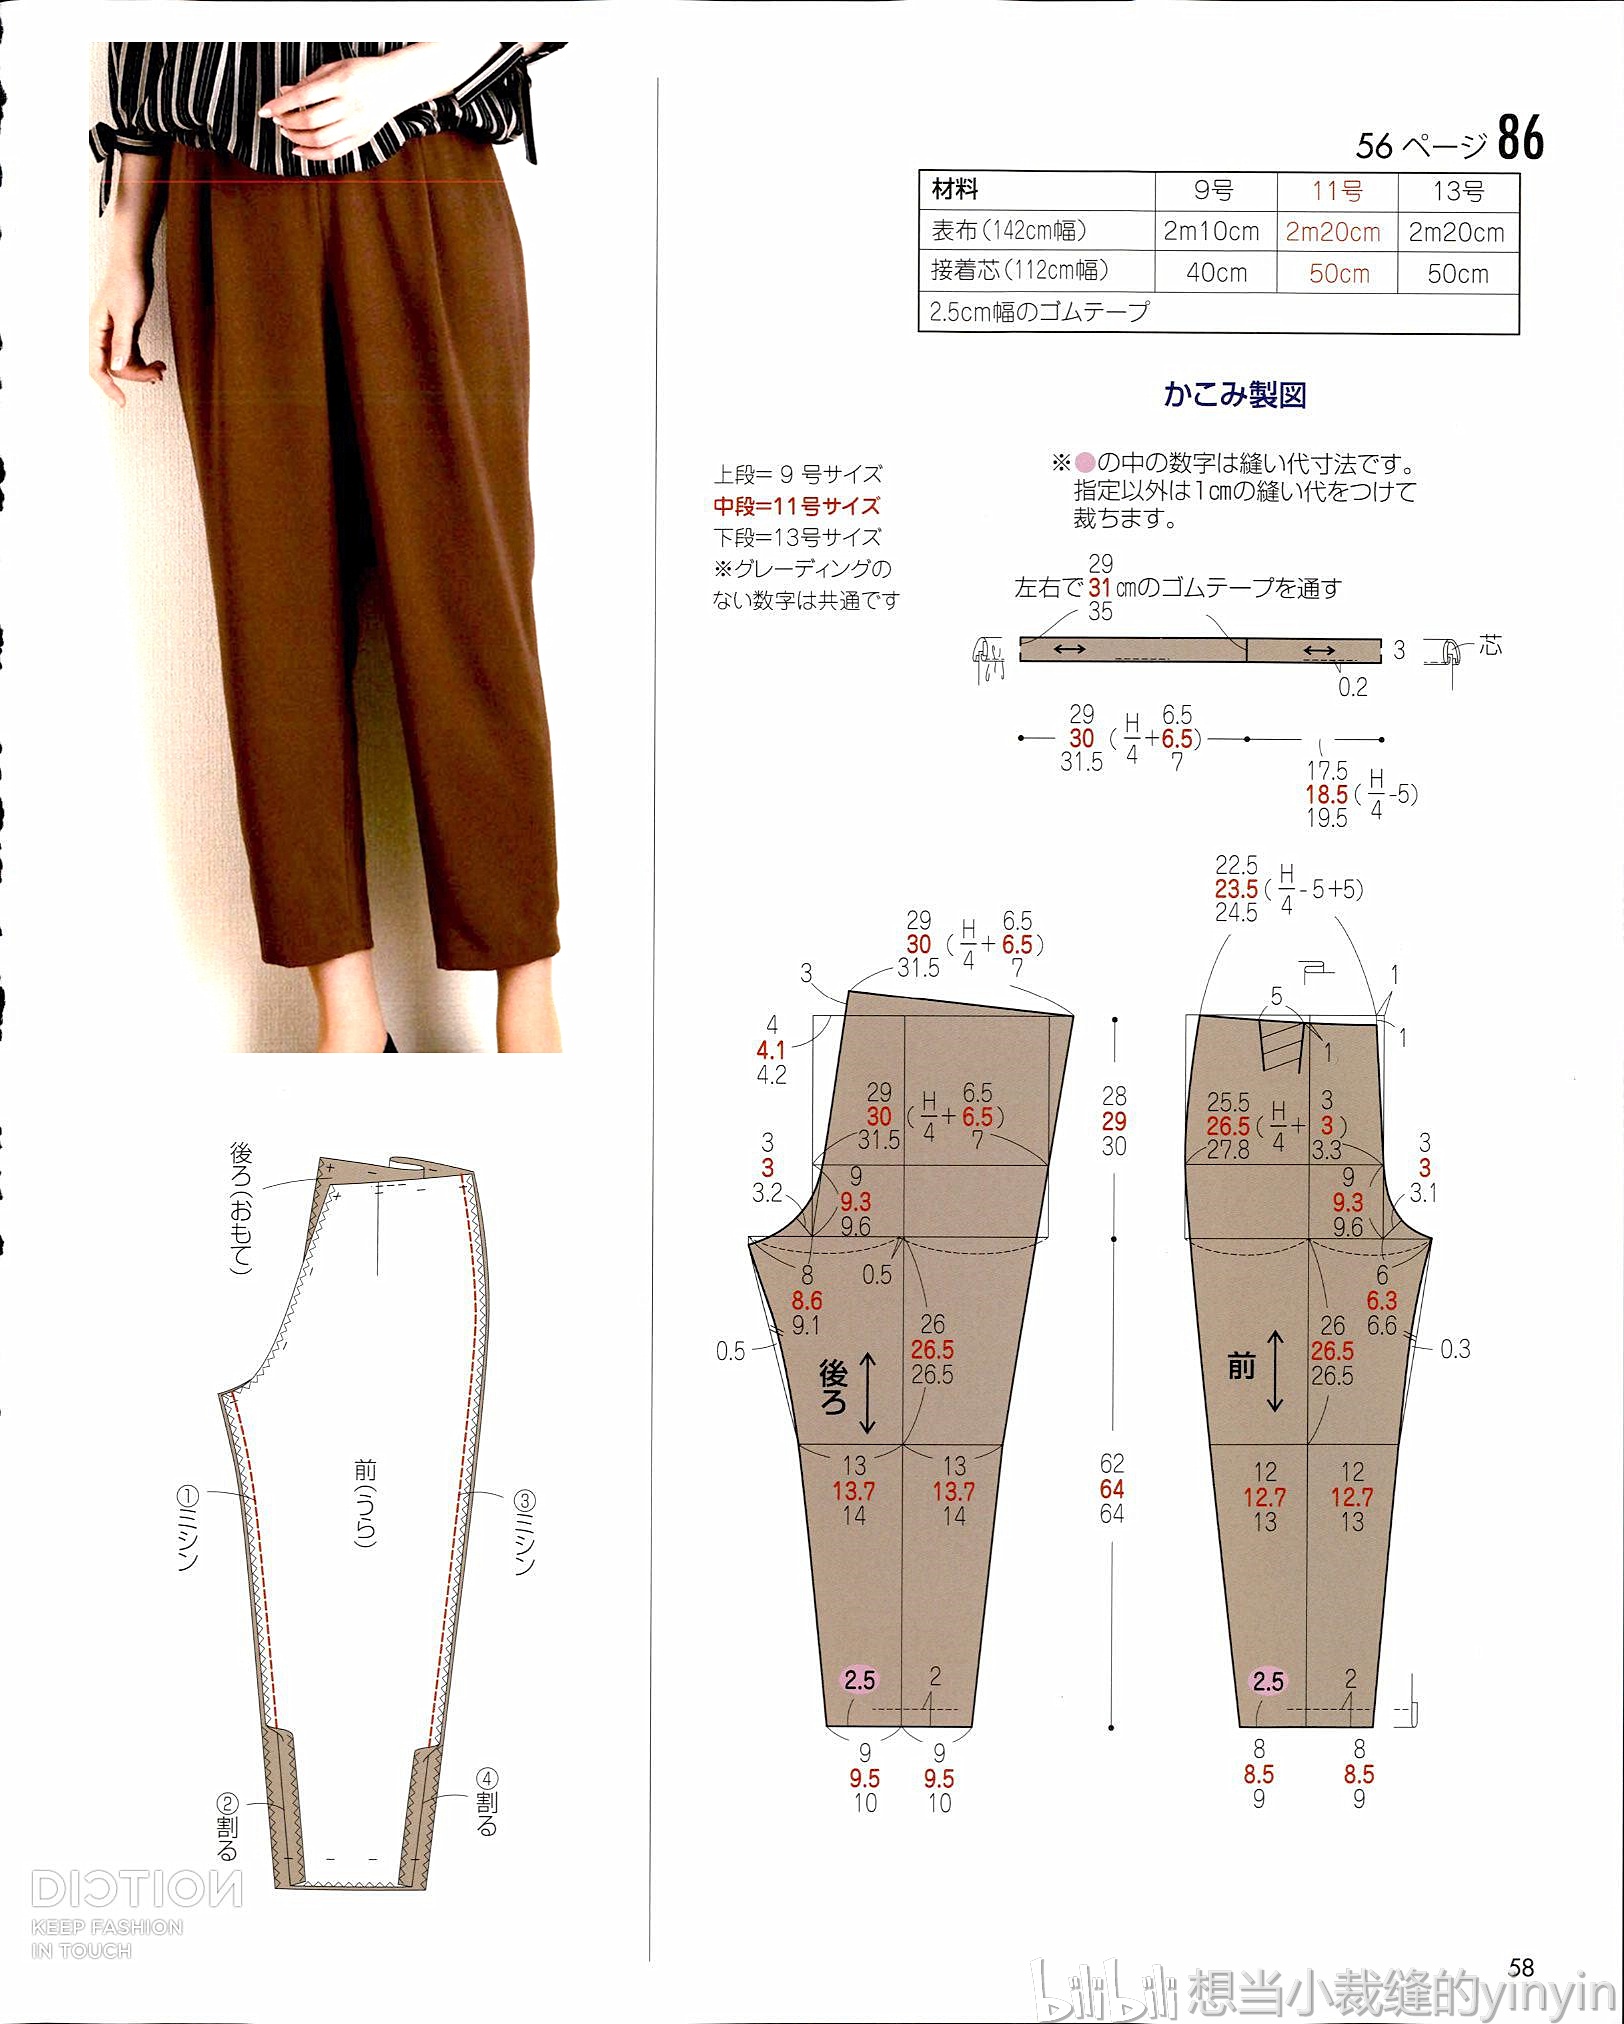 「pixiv特辑」杰出的功能性 背带裤、背带裙插画特辑 （16P） – E次元